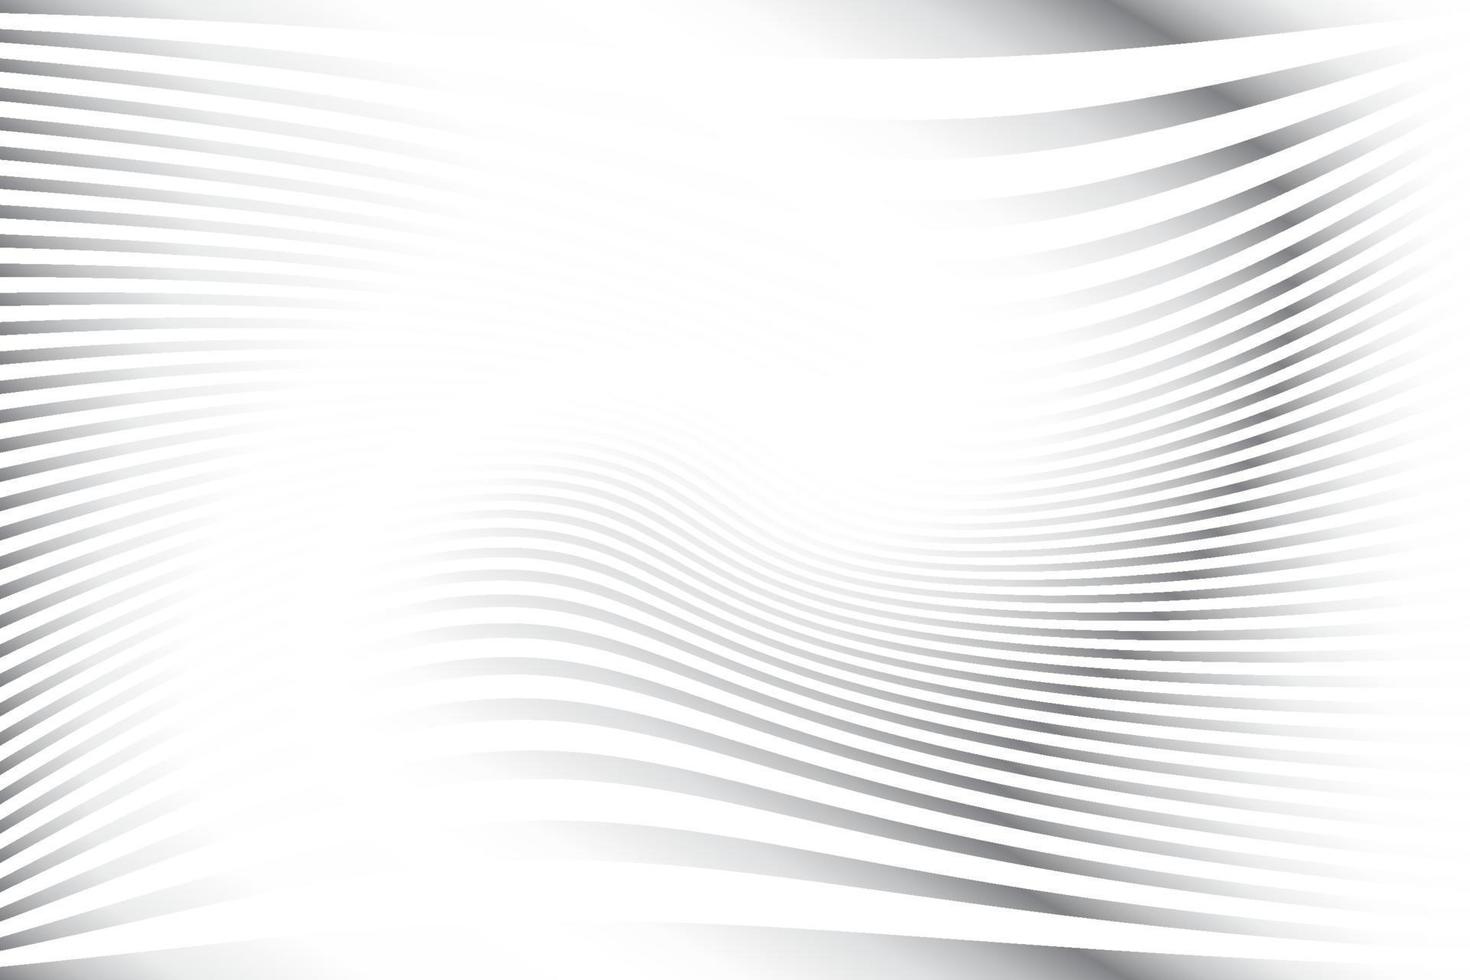 cor branca e cinza abstrata, fundo de listras de design moderno com forma redonda geométrica, padrão de onda. ilustração vetorial. vetor